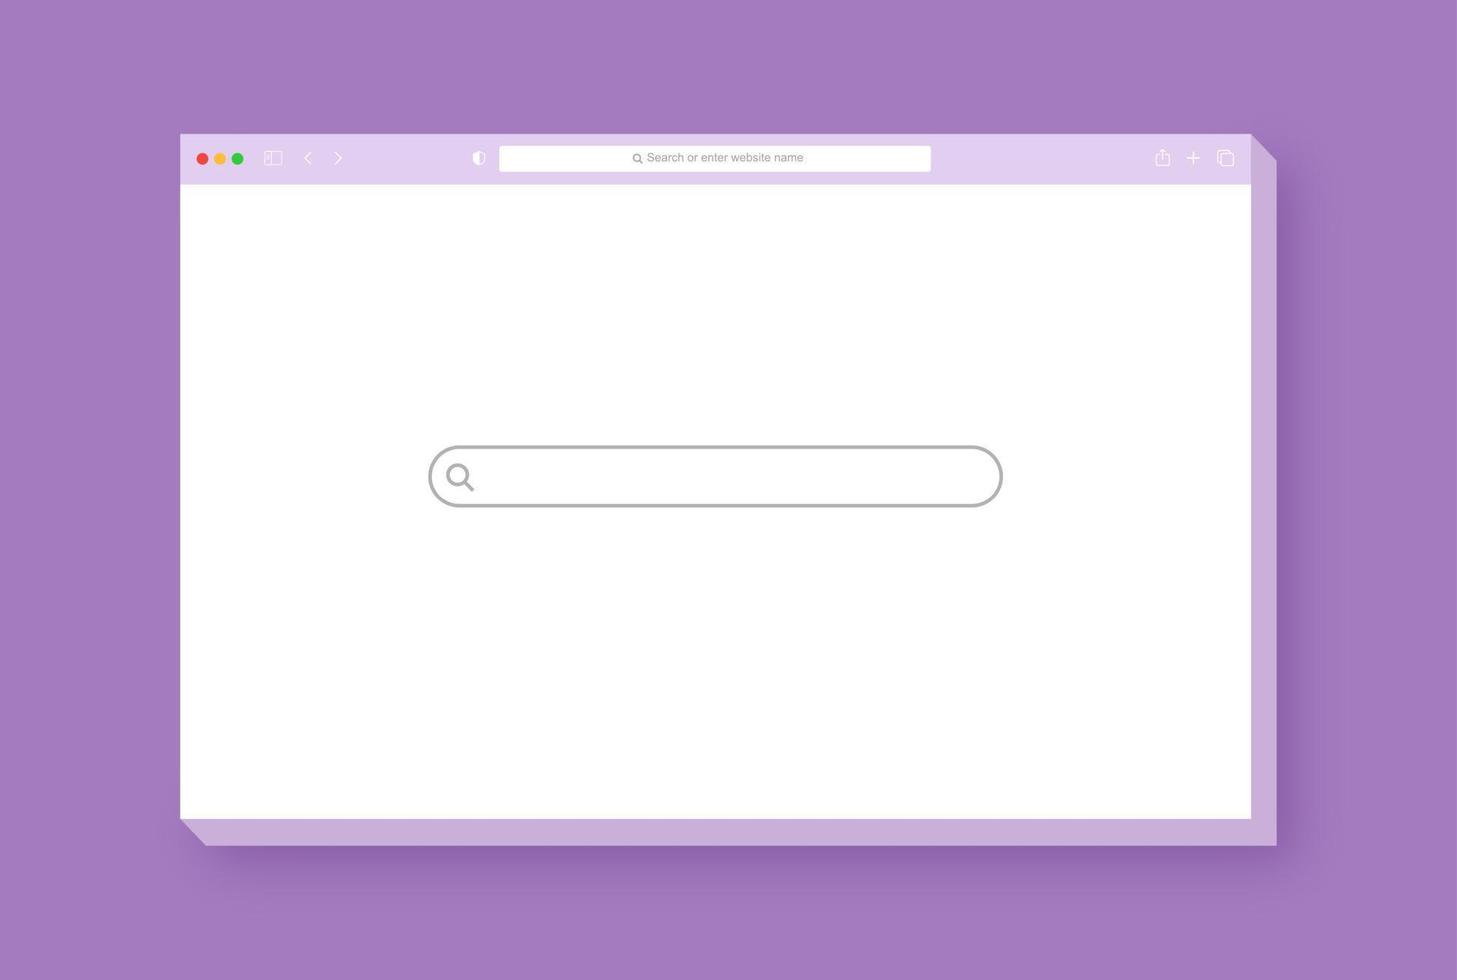 design moderno da janela do navegador isolado no fundo roxo. maquete de tela da janela da web. conceito de página vazia de internet com sombra. vetor